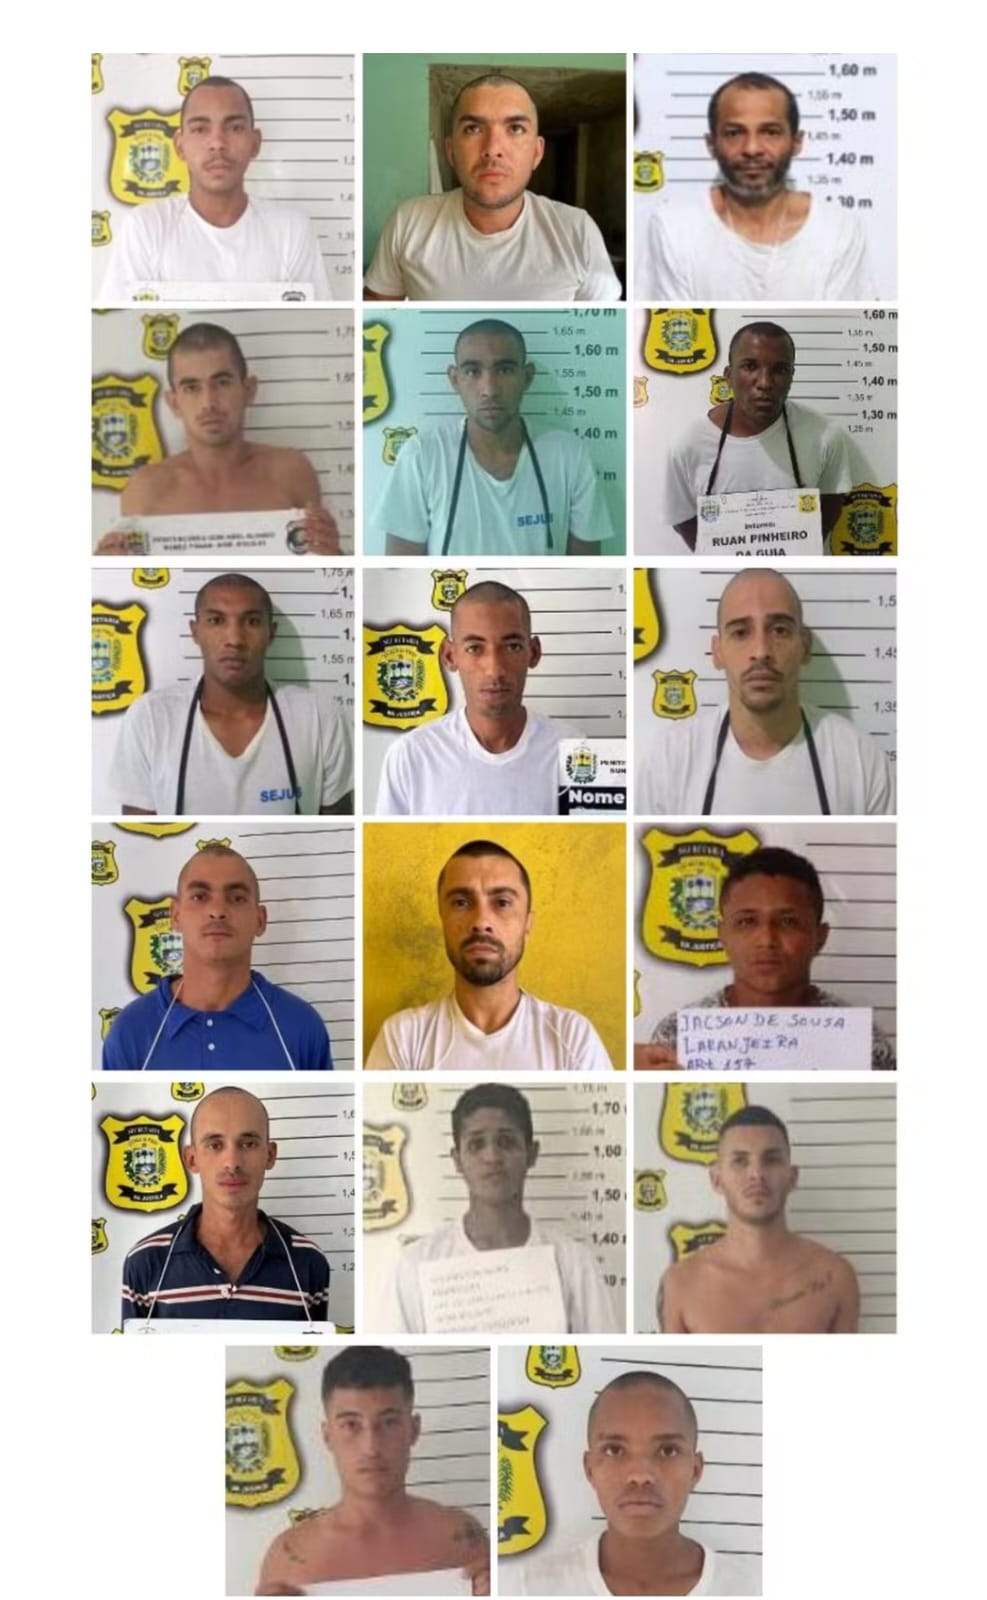 Depois de 2 fugas em Mossoró, 13 em Rondônia, outros 17 presos fogem da penitenciária de Bom Jesus no Estado do Piauí